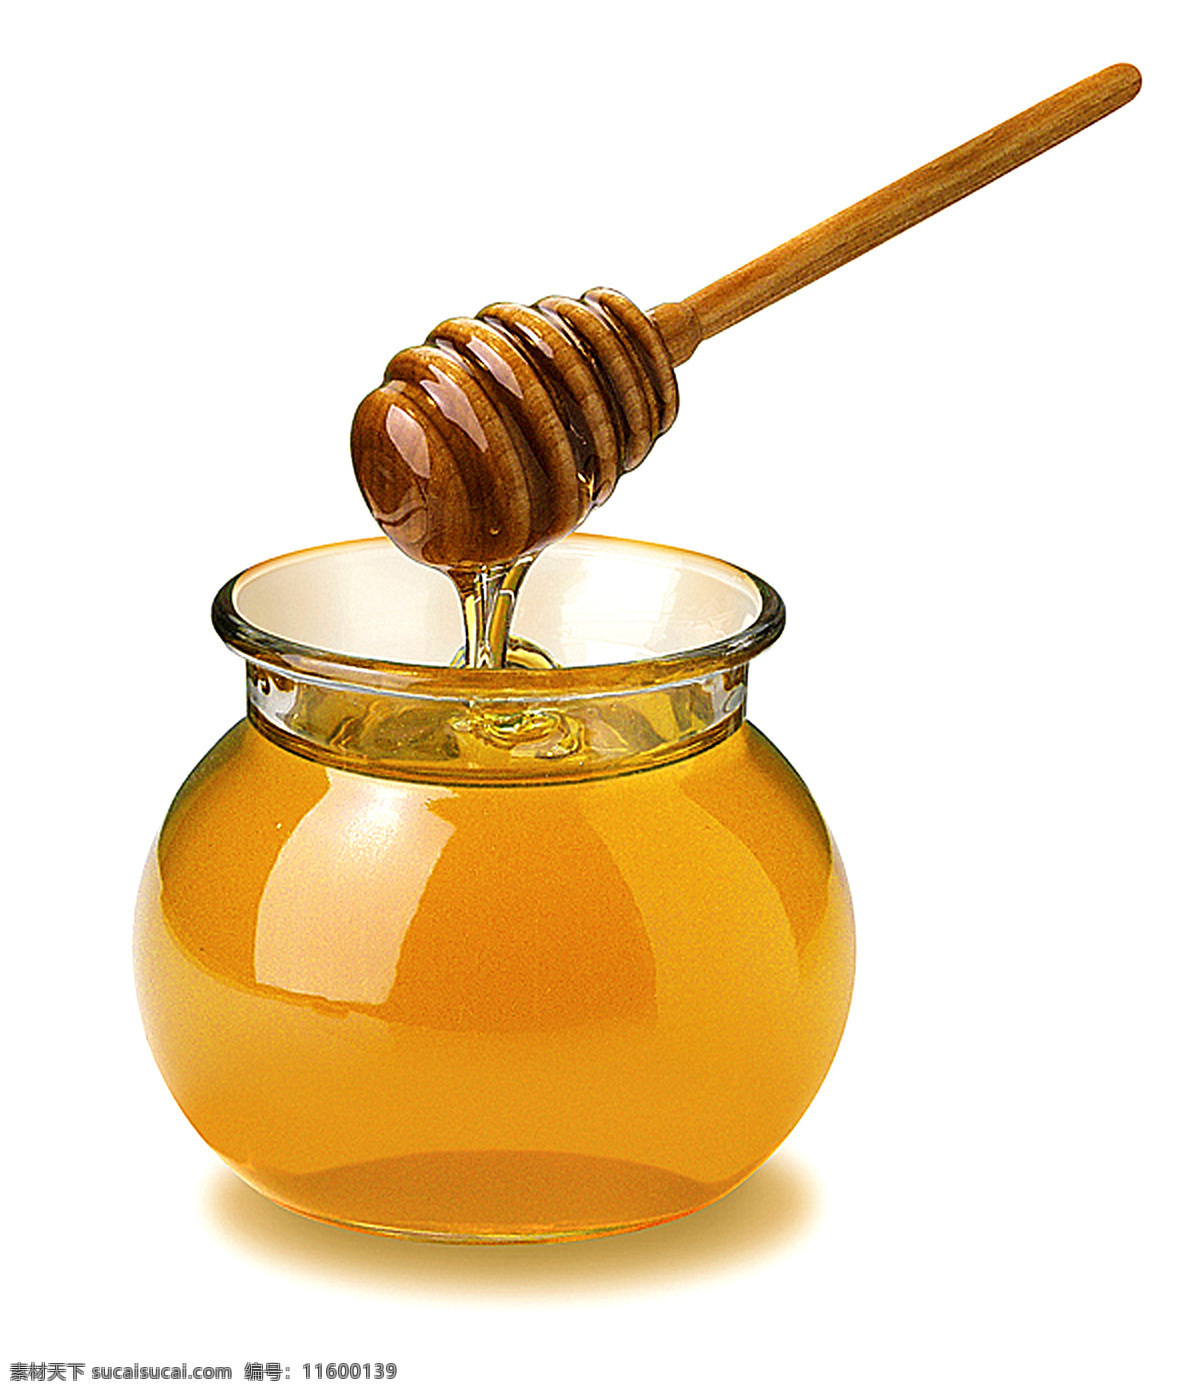 蜂蜜罐 蜂蜜 蜜糖 罐子 糖 包装设计 设计图库 生活百科 餐饮美食 设计素材